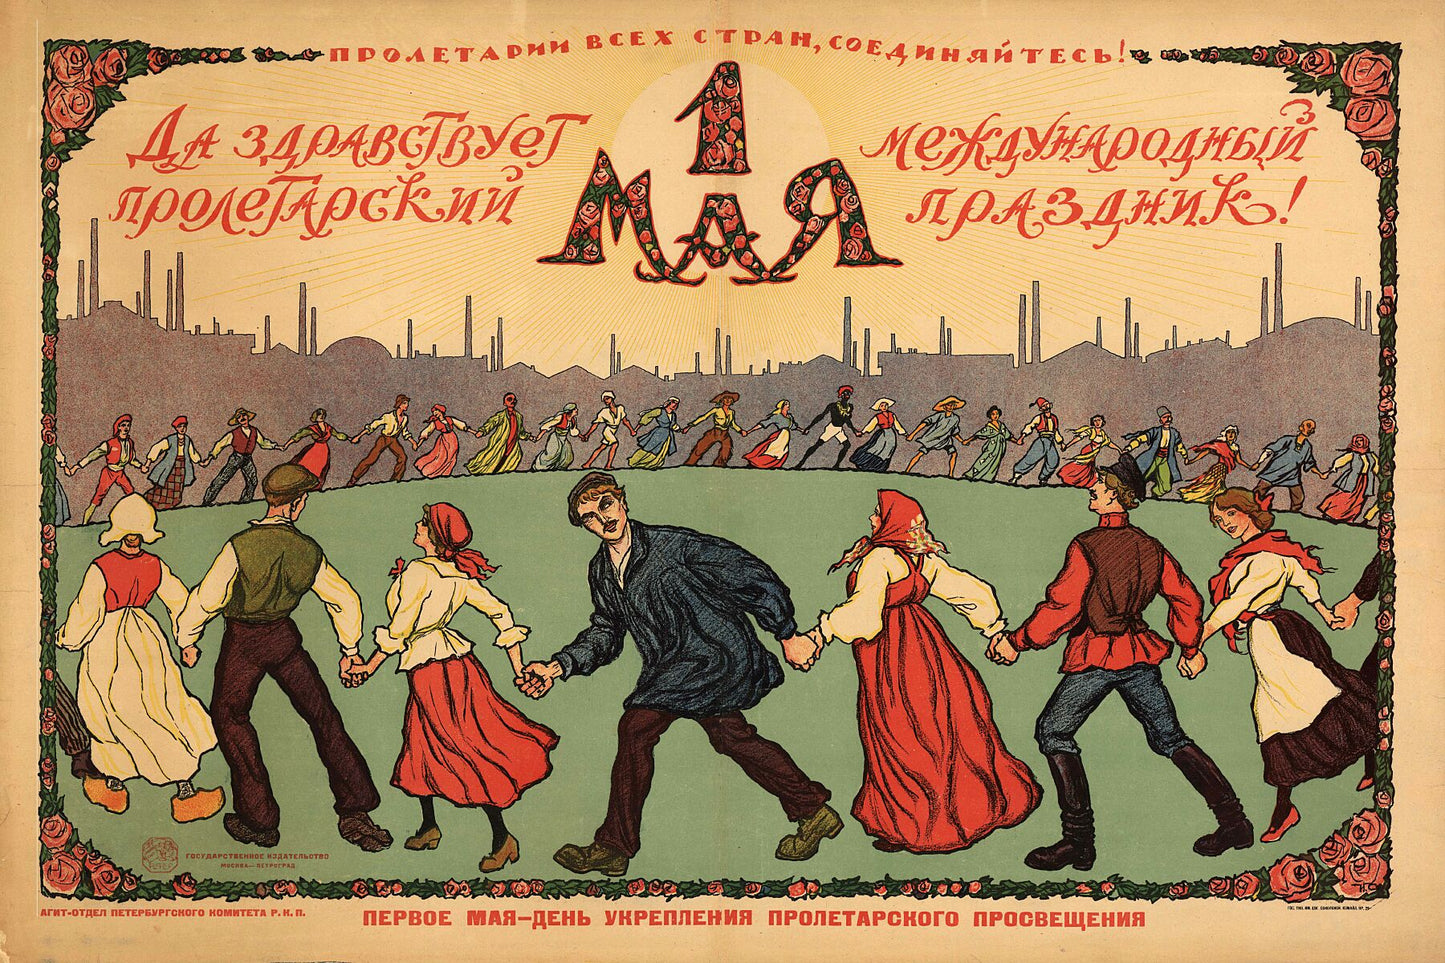 1st May Poster by Ivan Vasilyevich Simakov - 1920